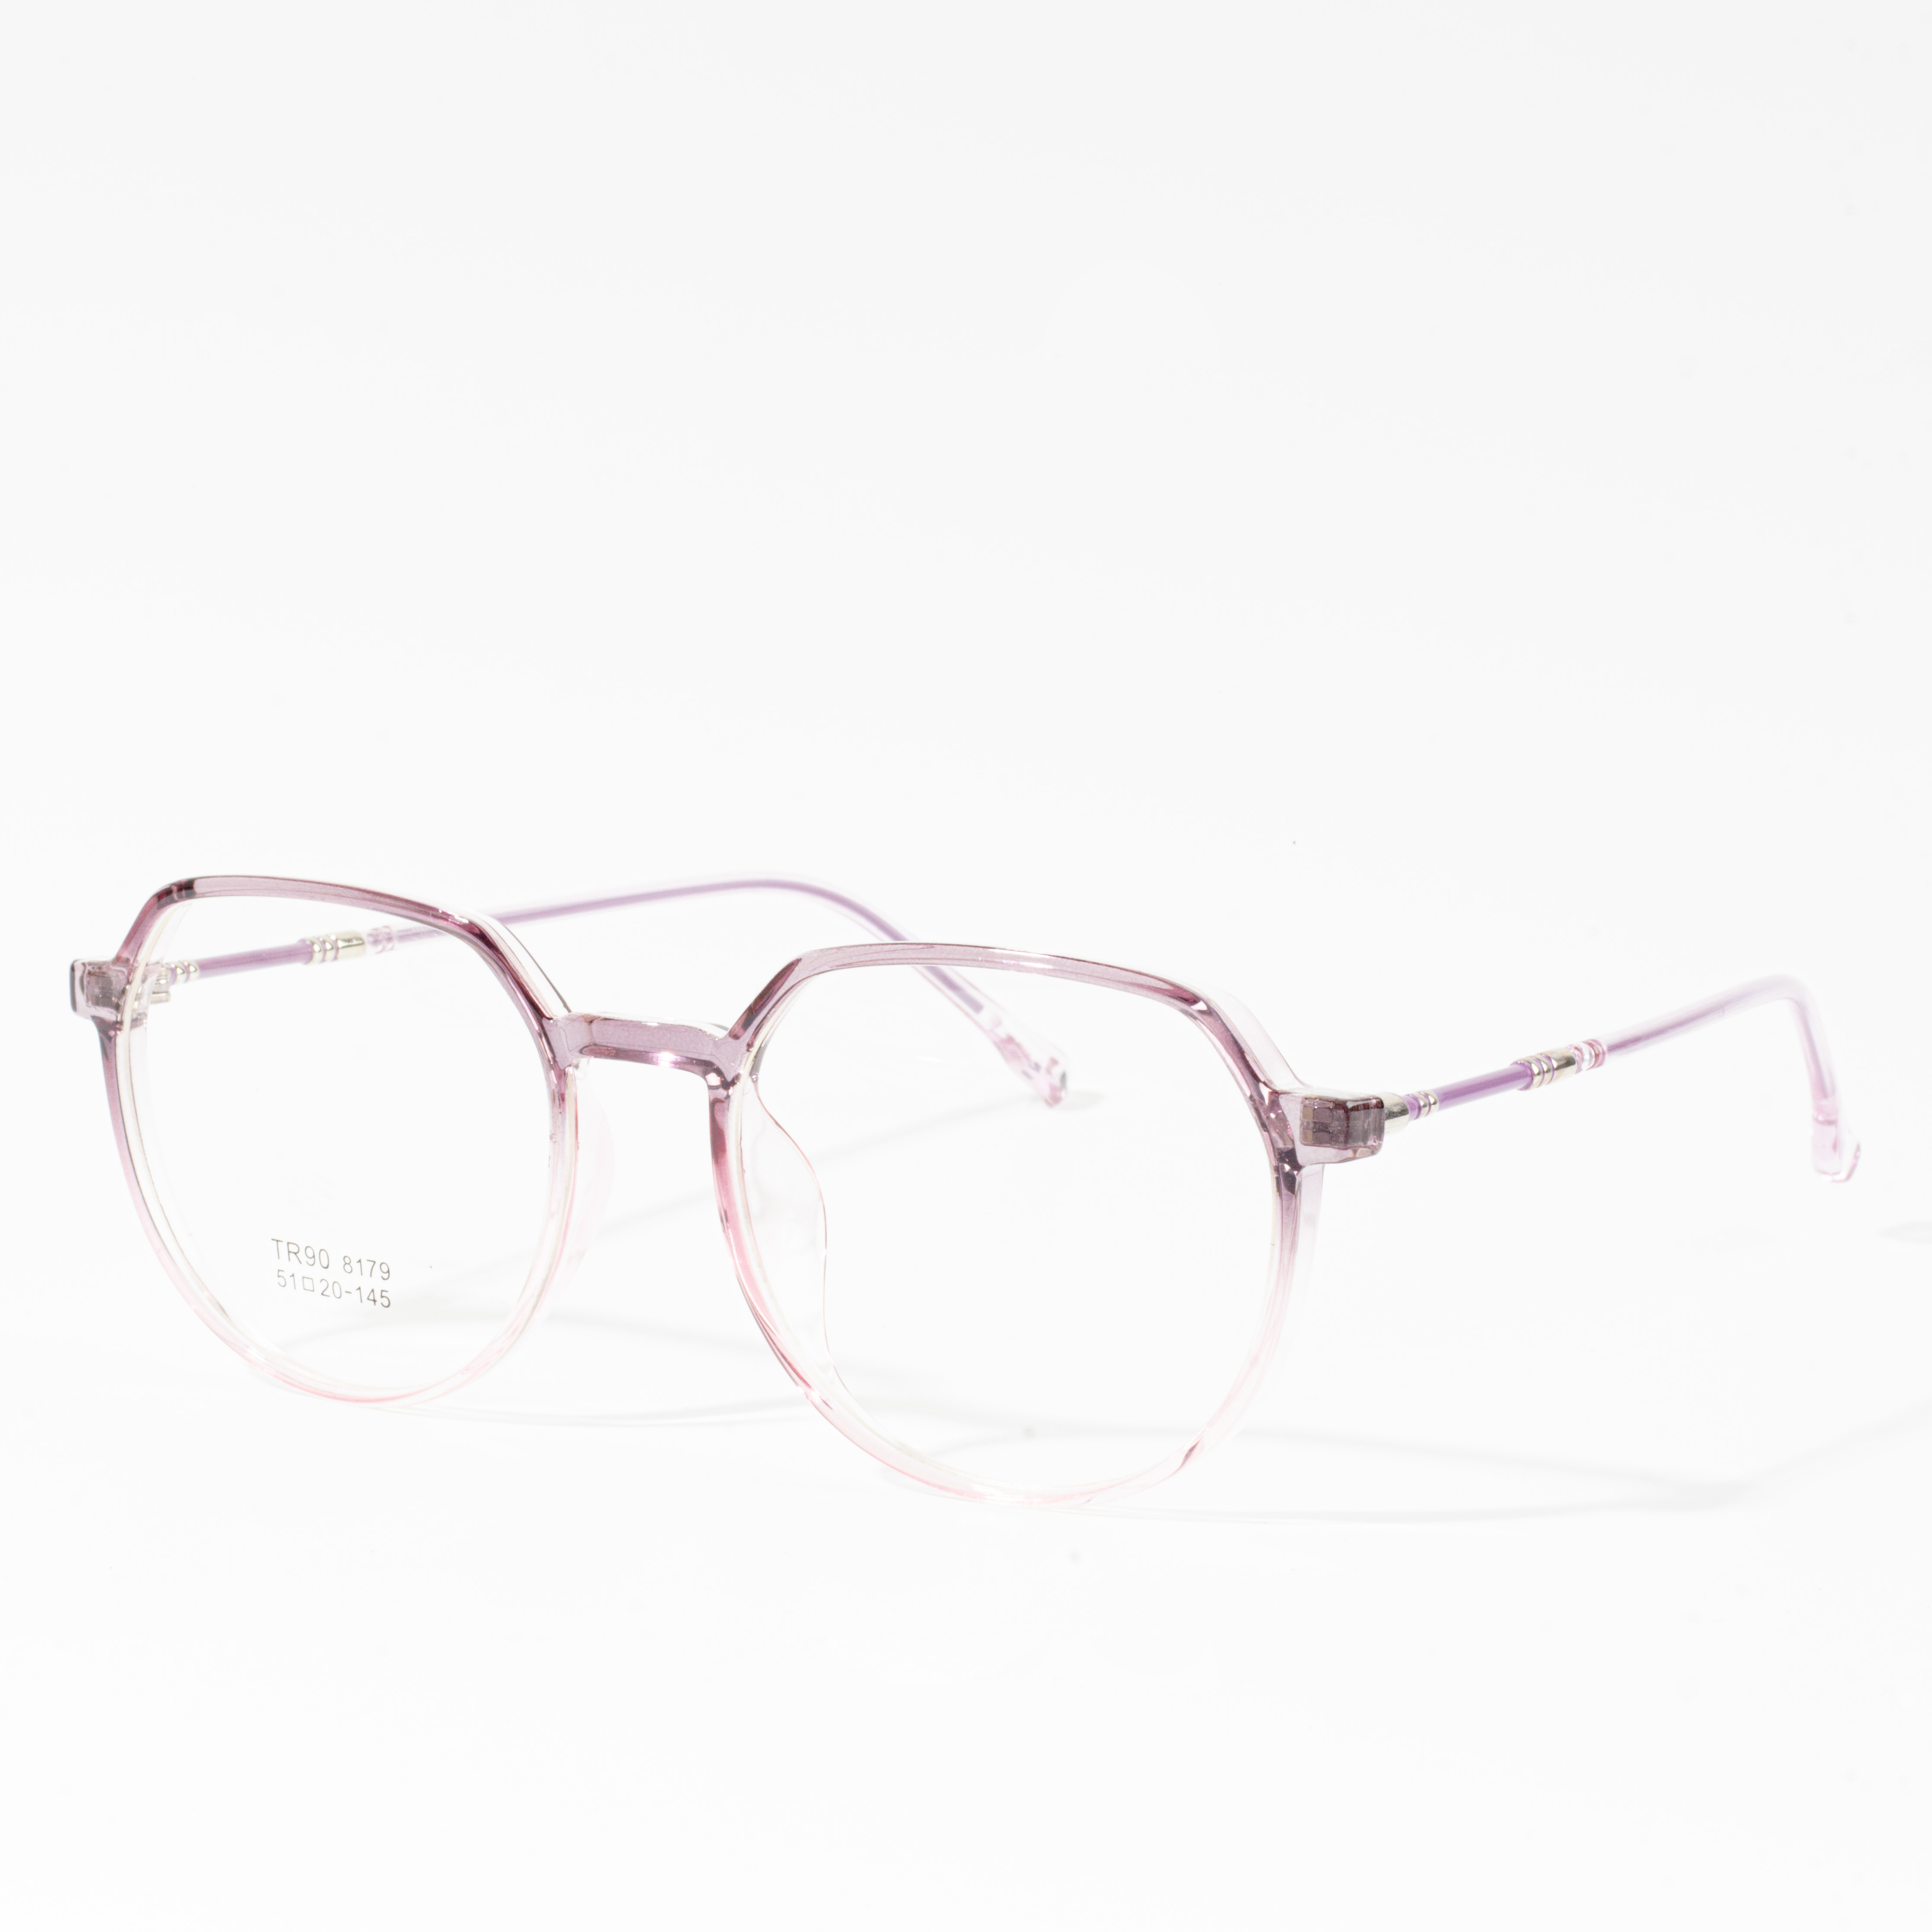 frame kacamata wanita murah